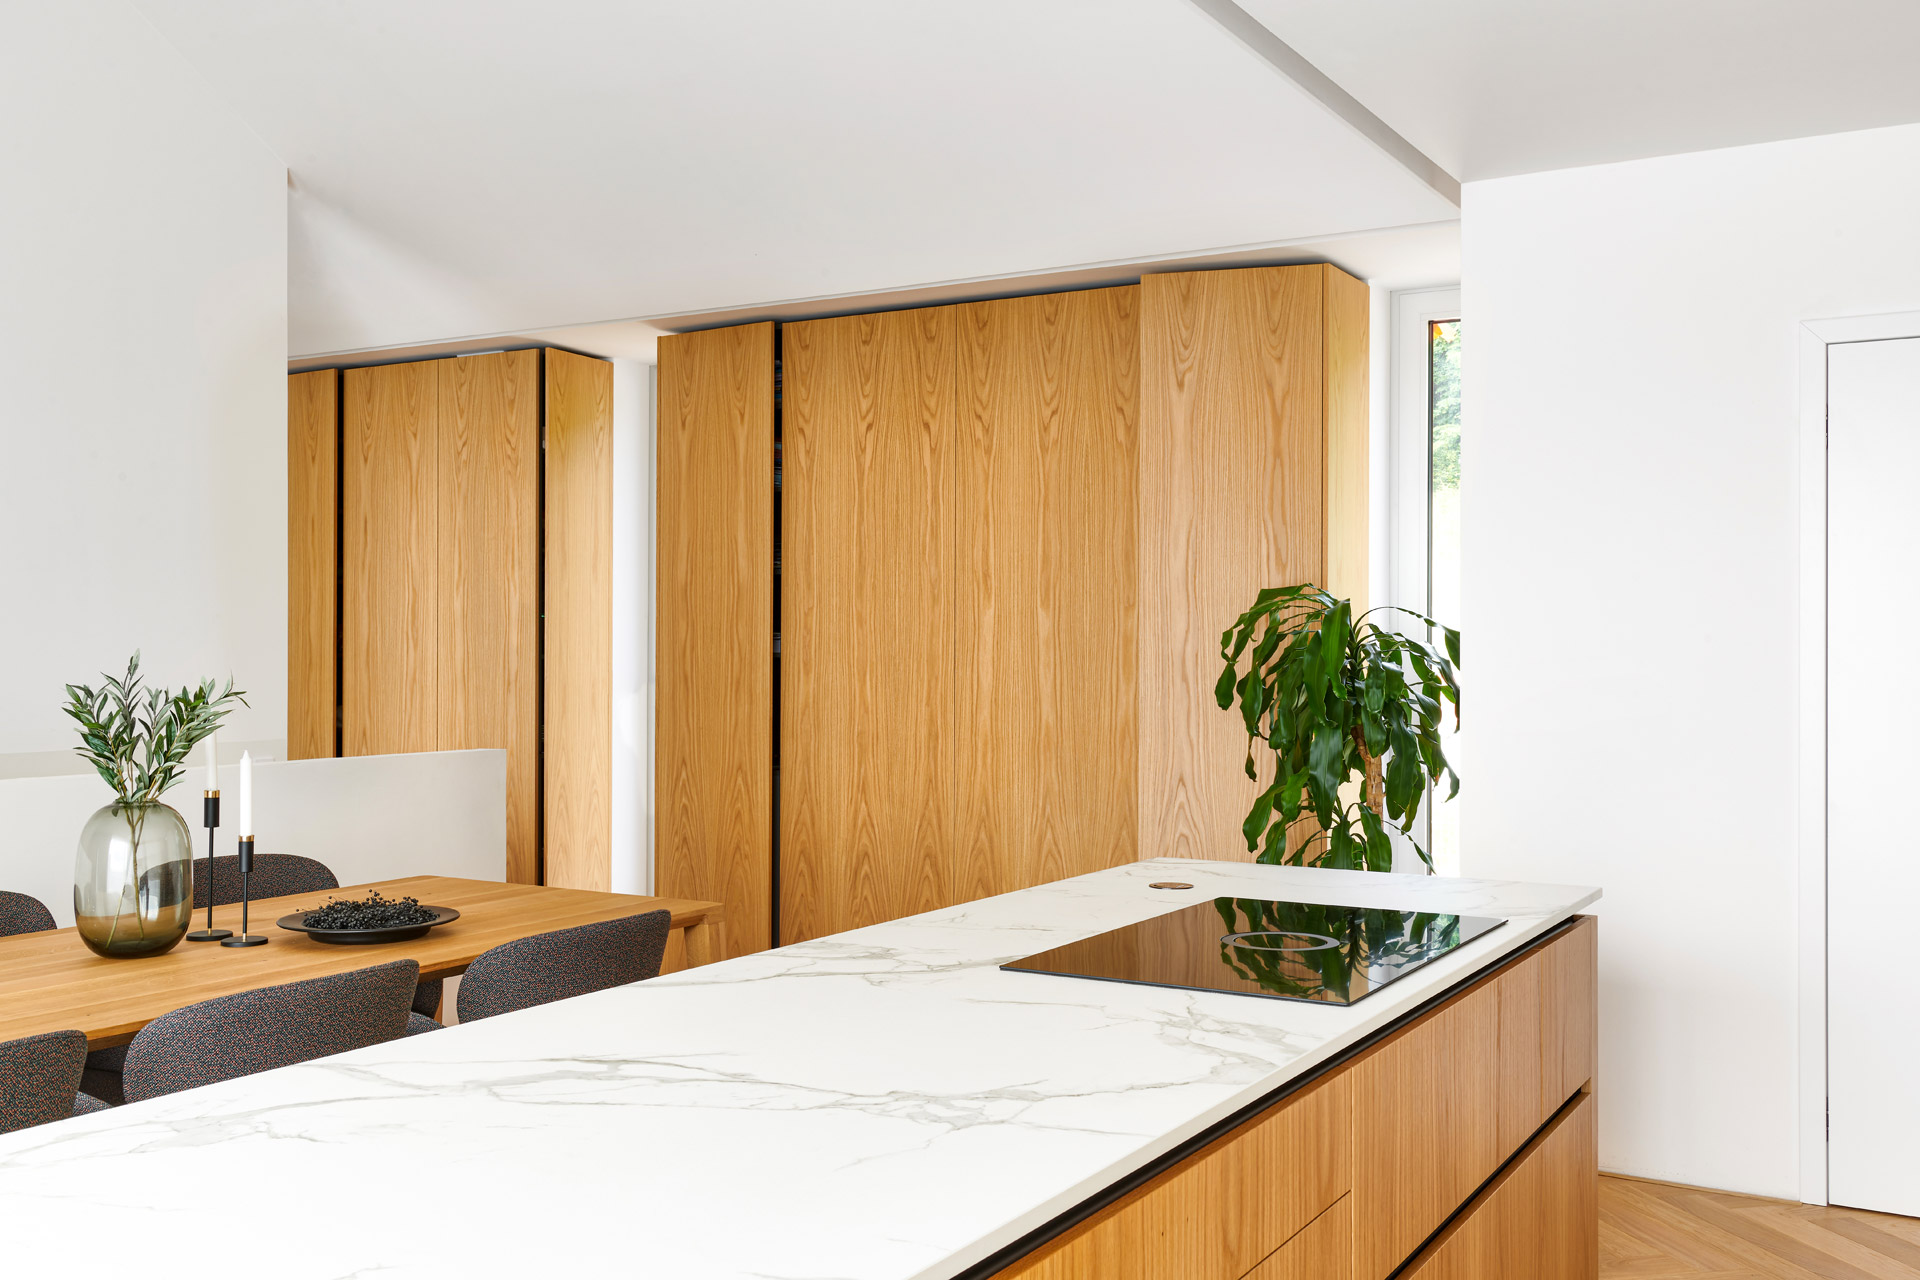 Hanák nábytek Complete interior Kitchen